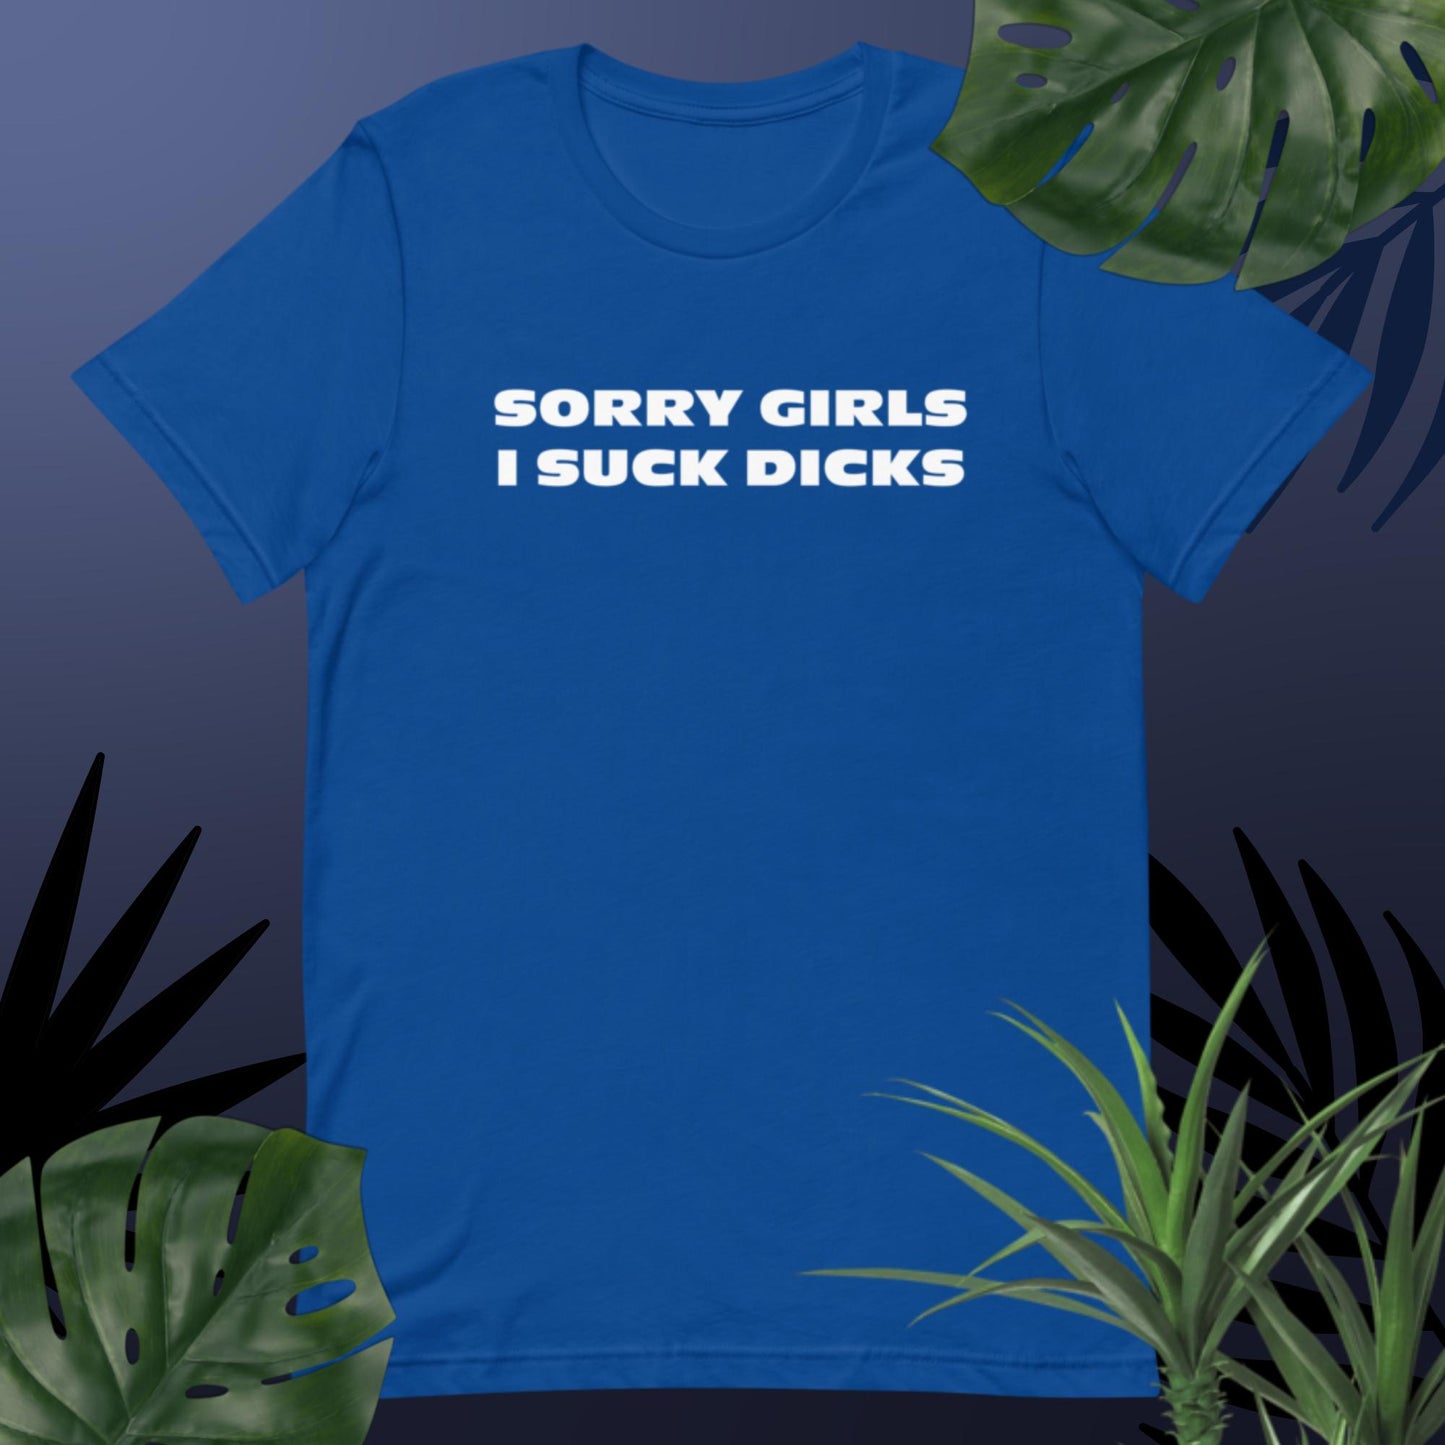 SORRY GIRLS I SUCK DICKS